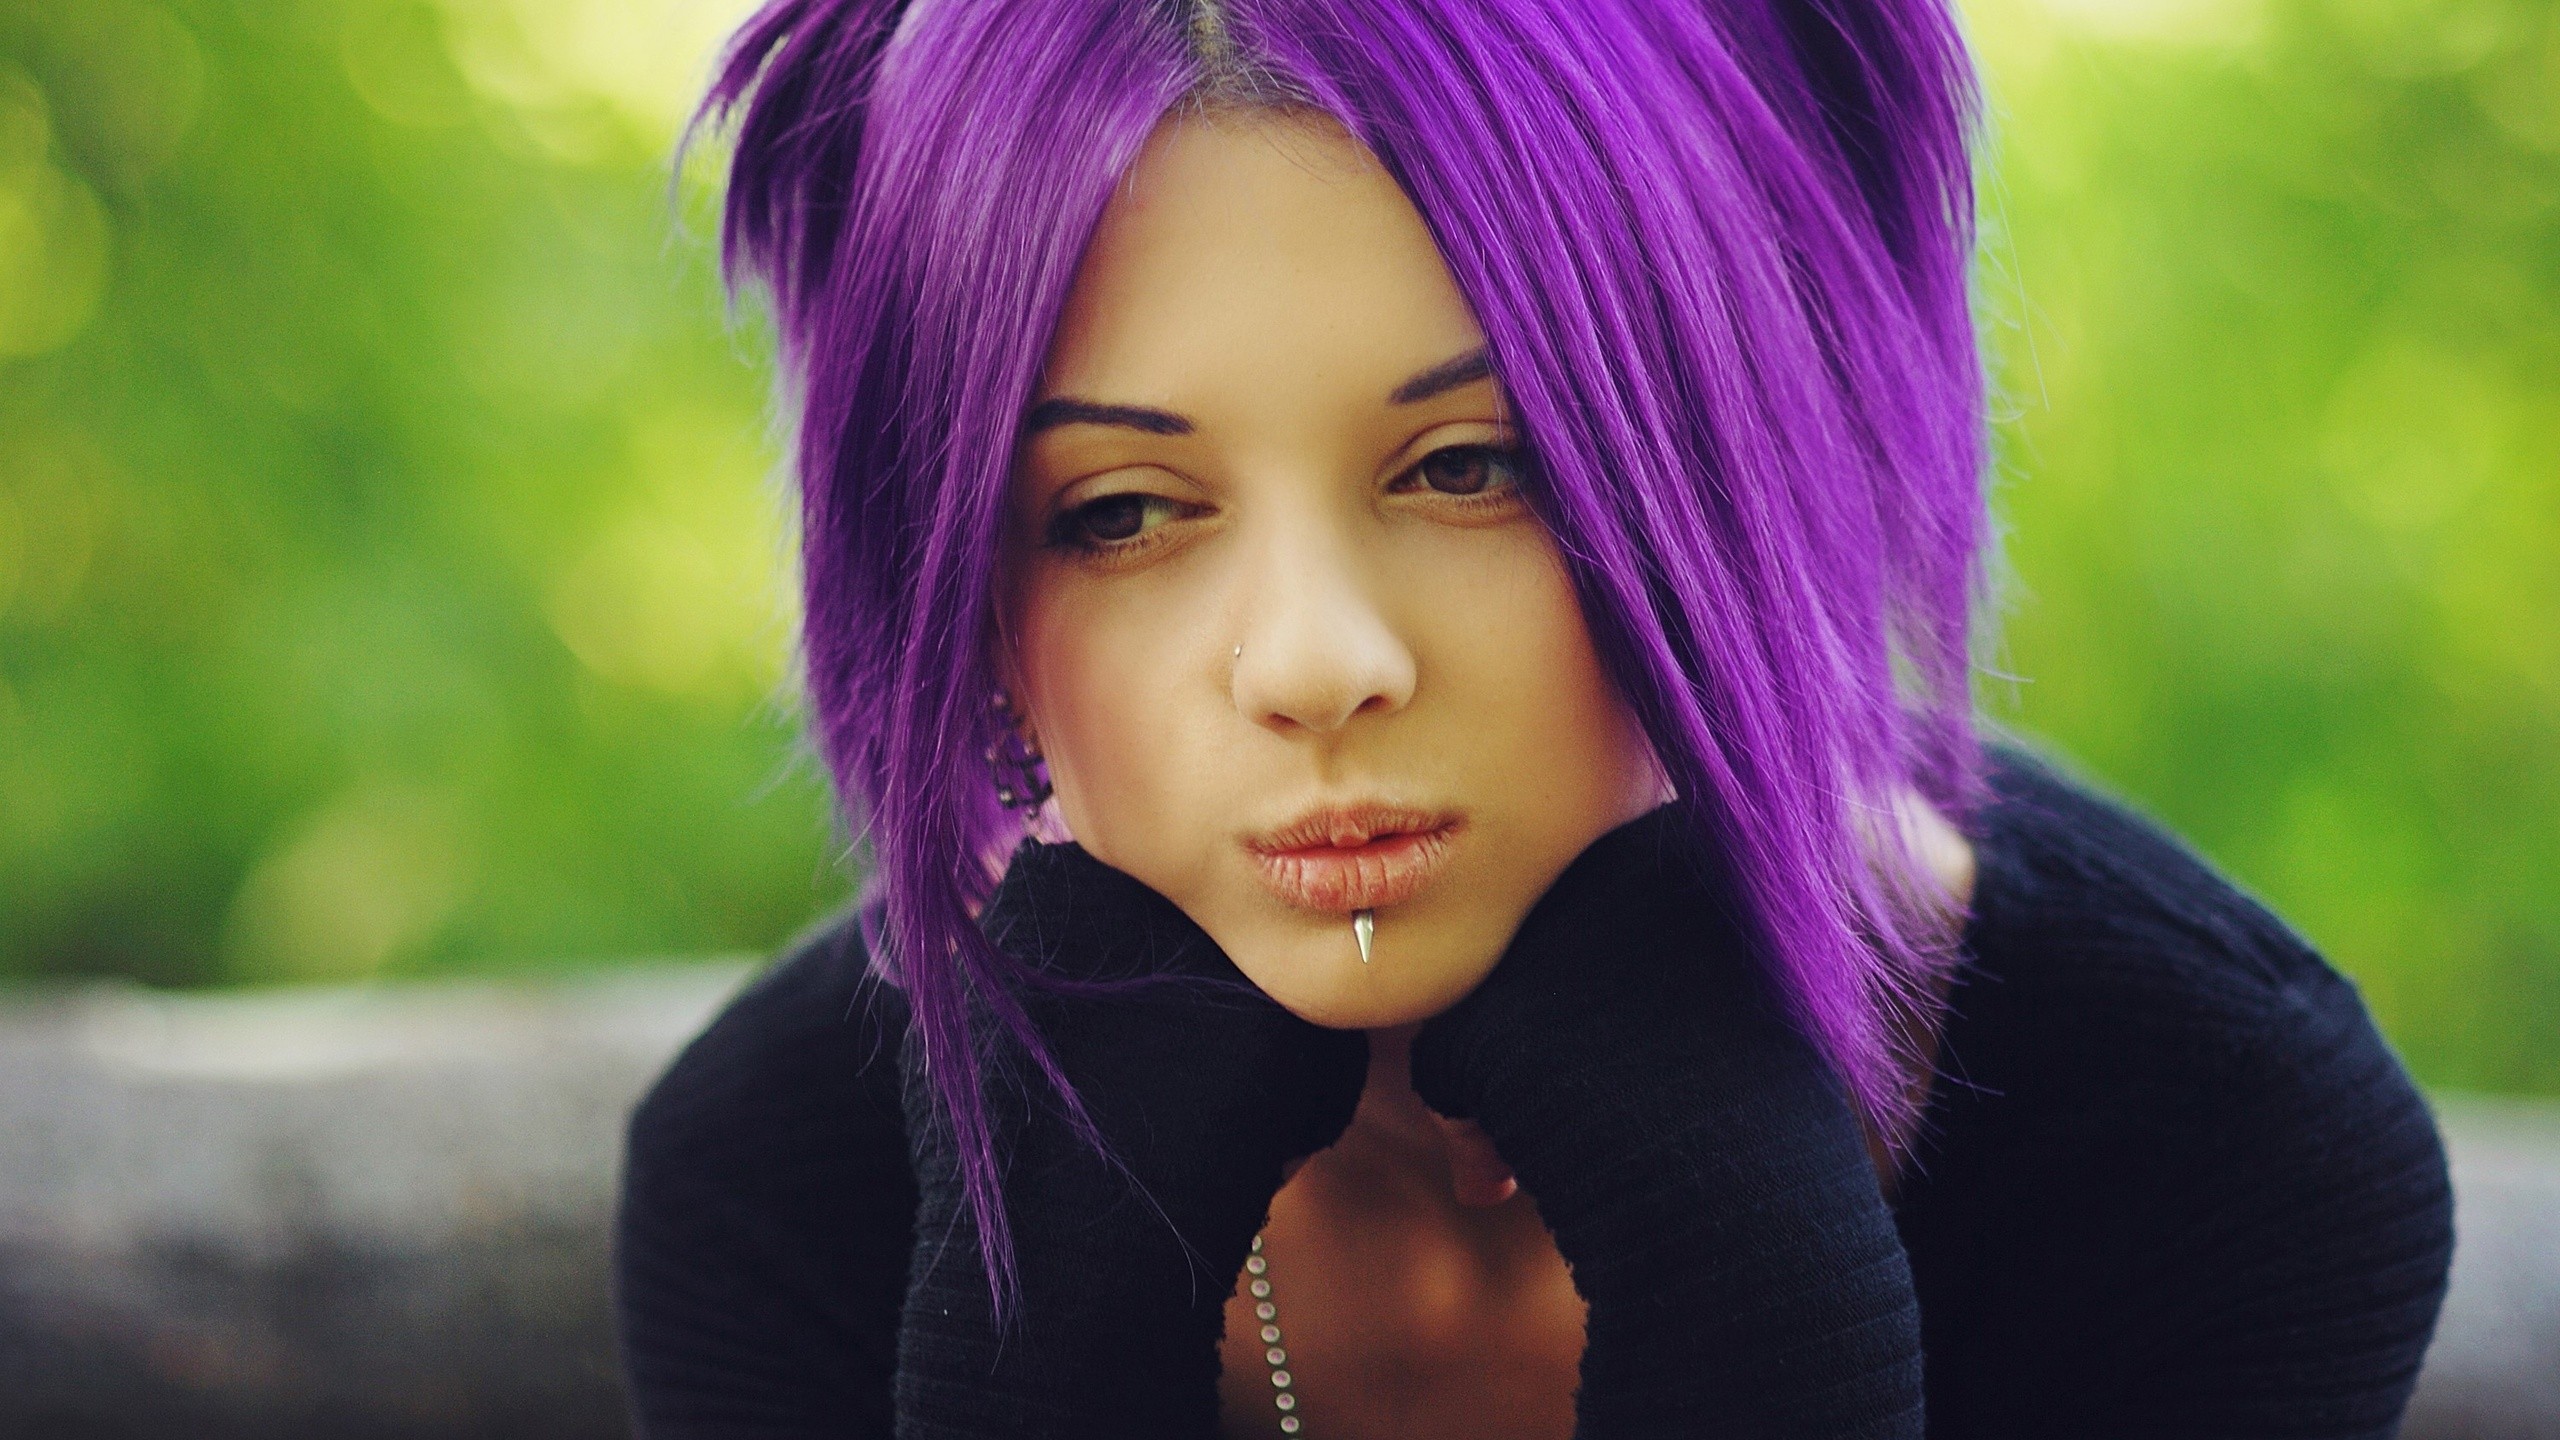 women purple hair Wallpaper